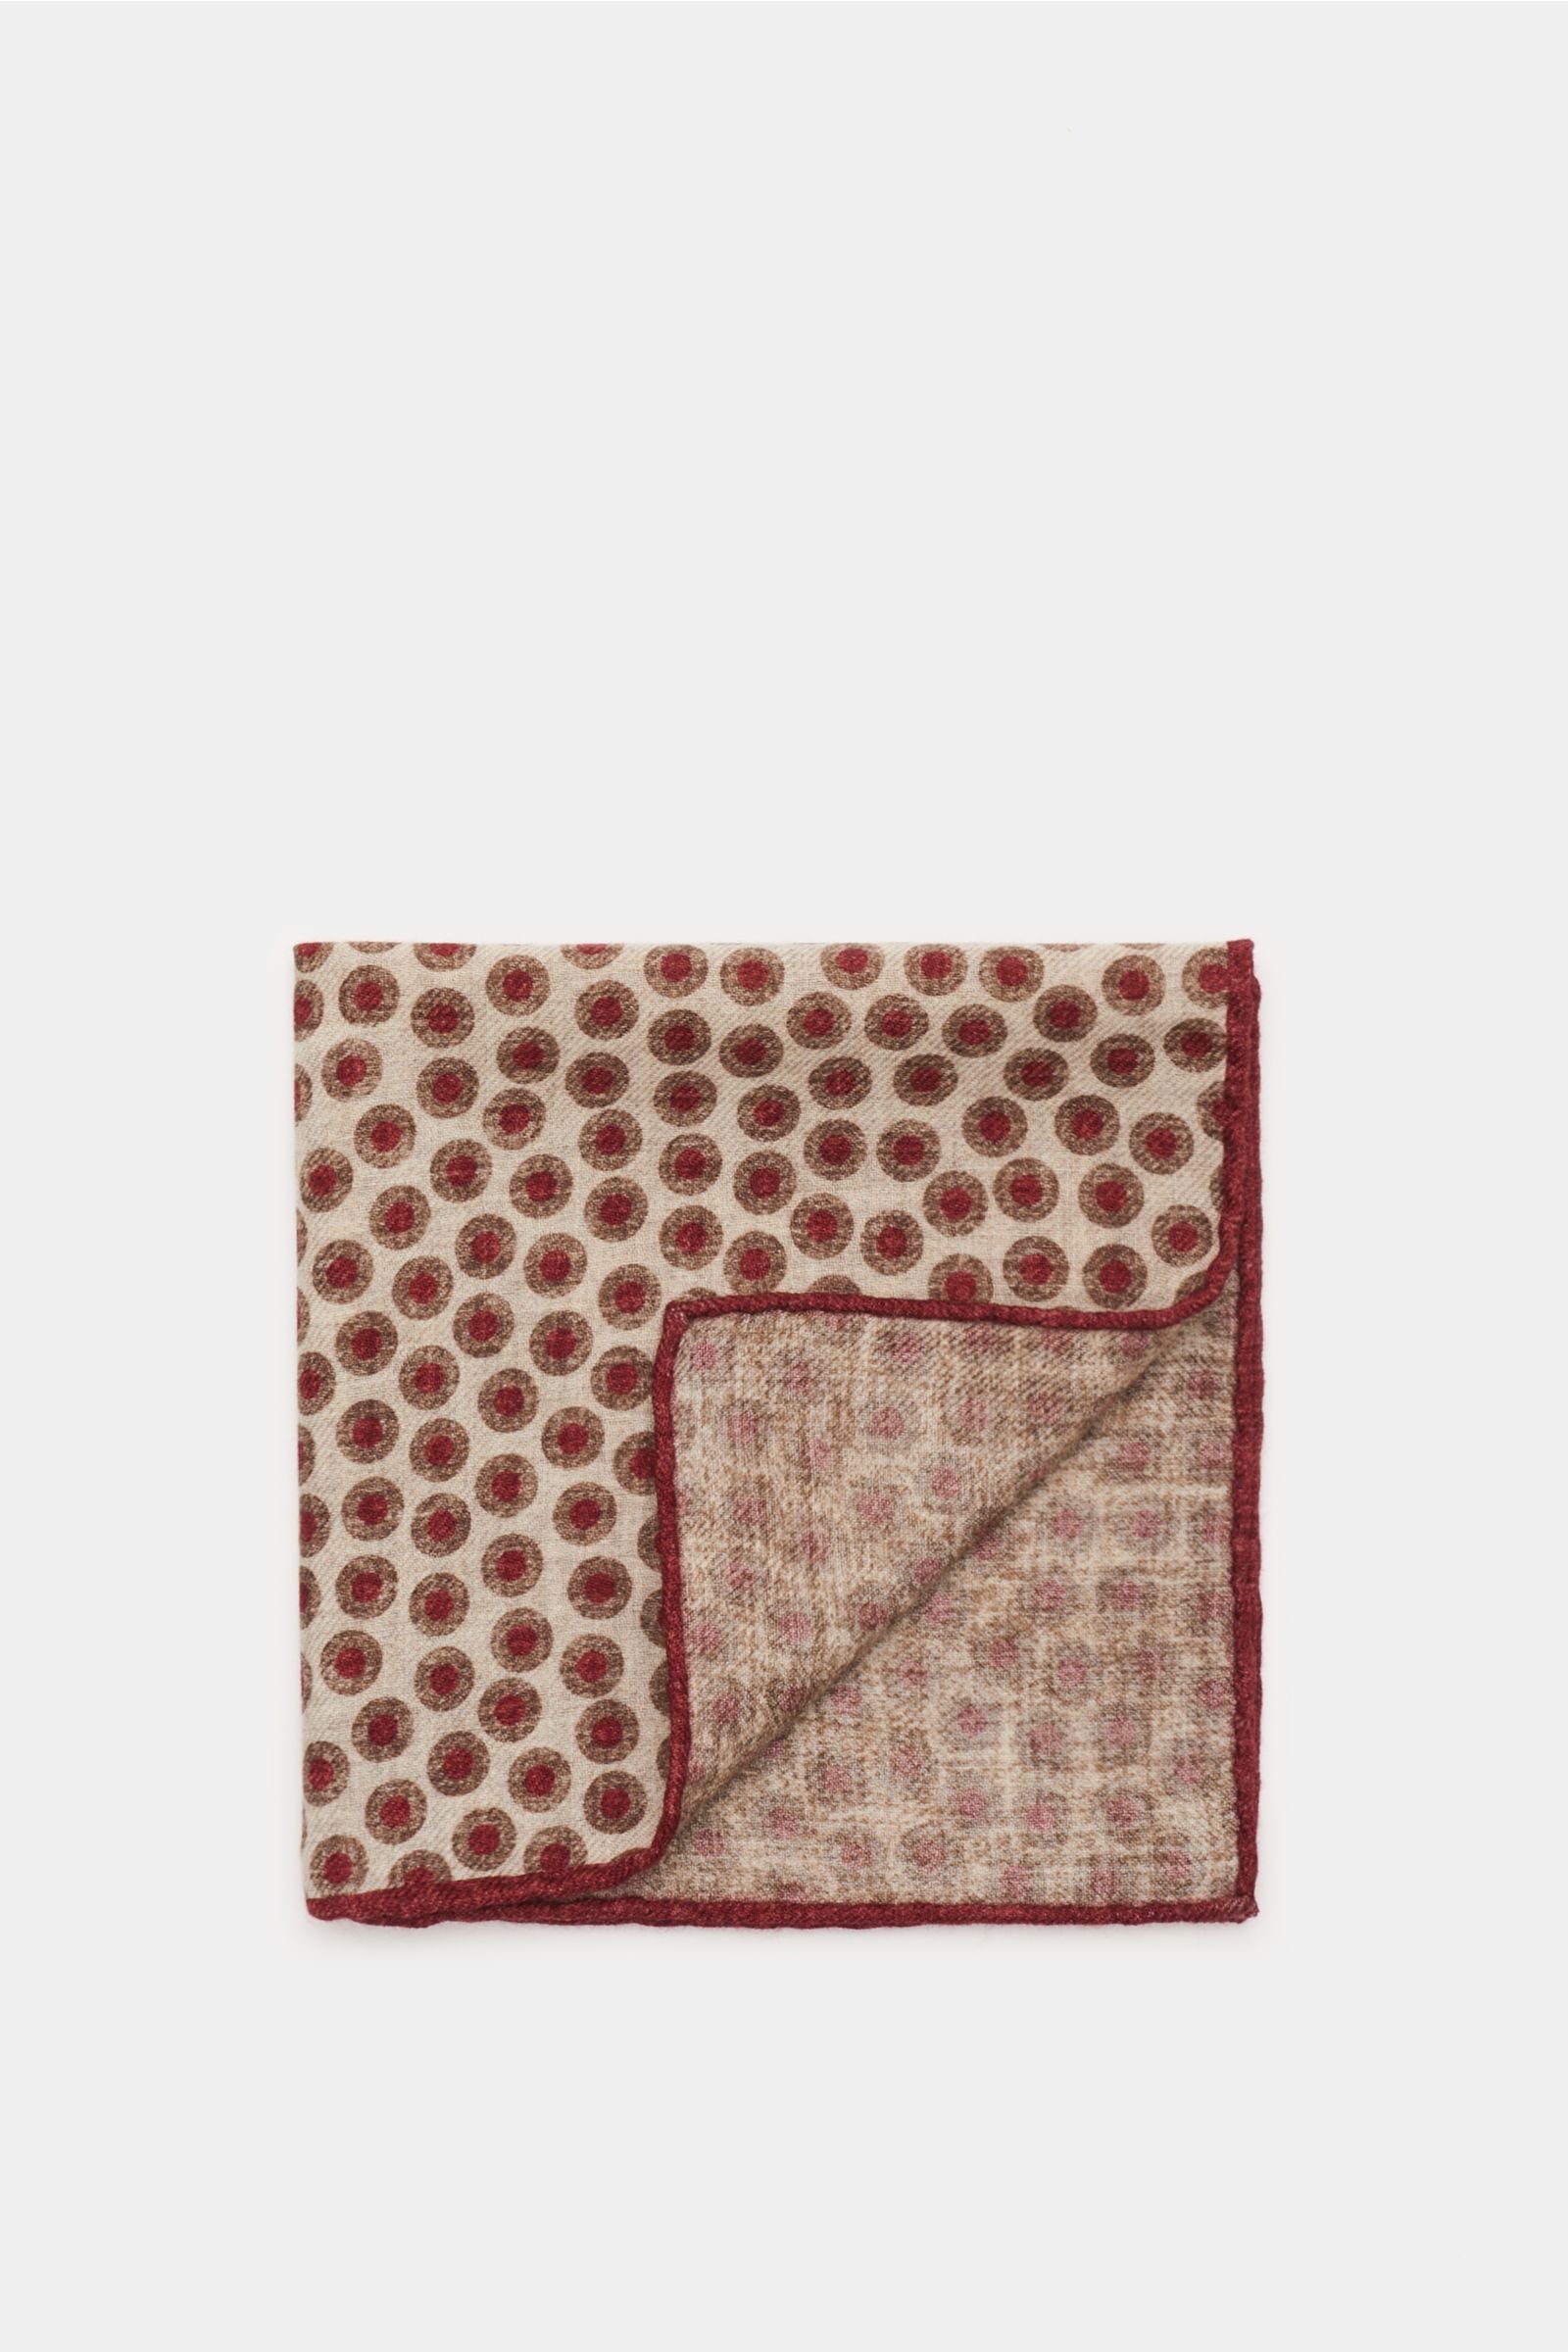 Pocket square beige/burgundy patterned